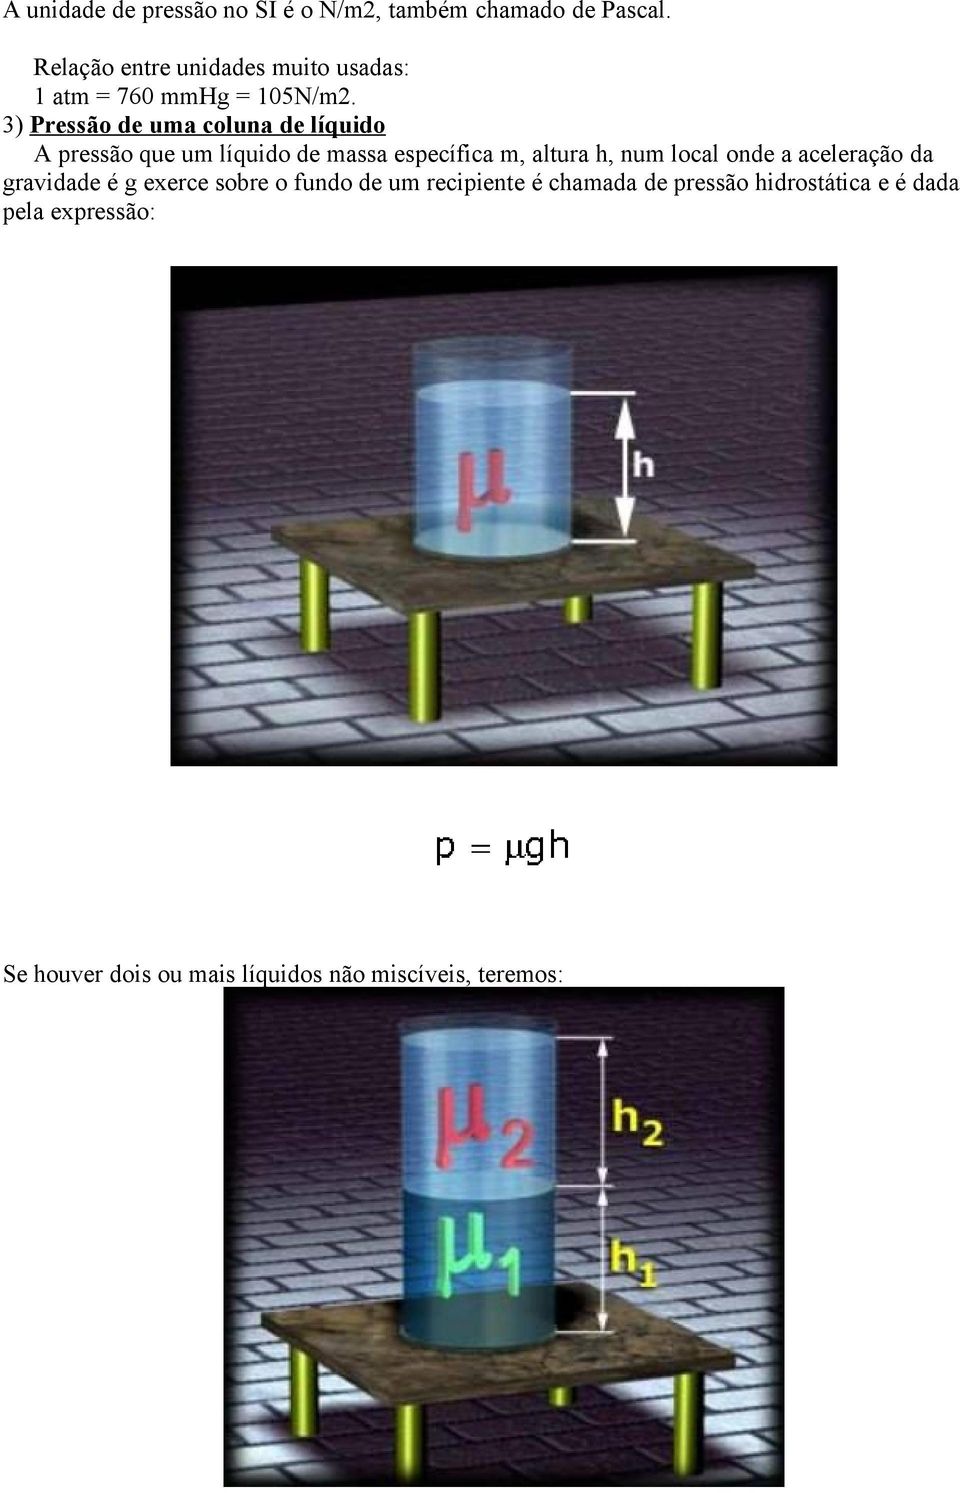 3) Pressão de uma coluna de líquido A pressão que um líquido de massa específica m, altura h, num local